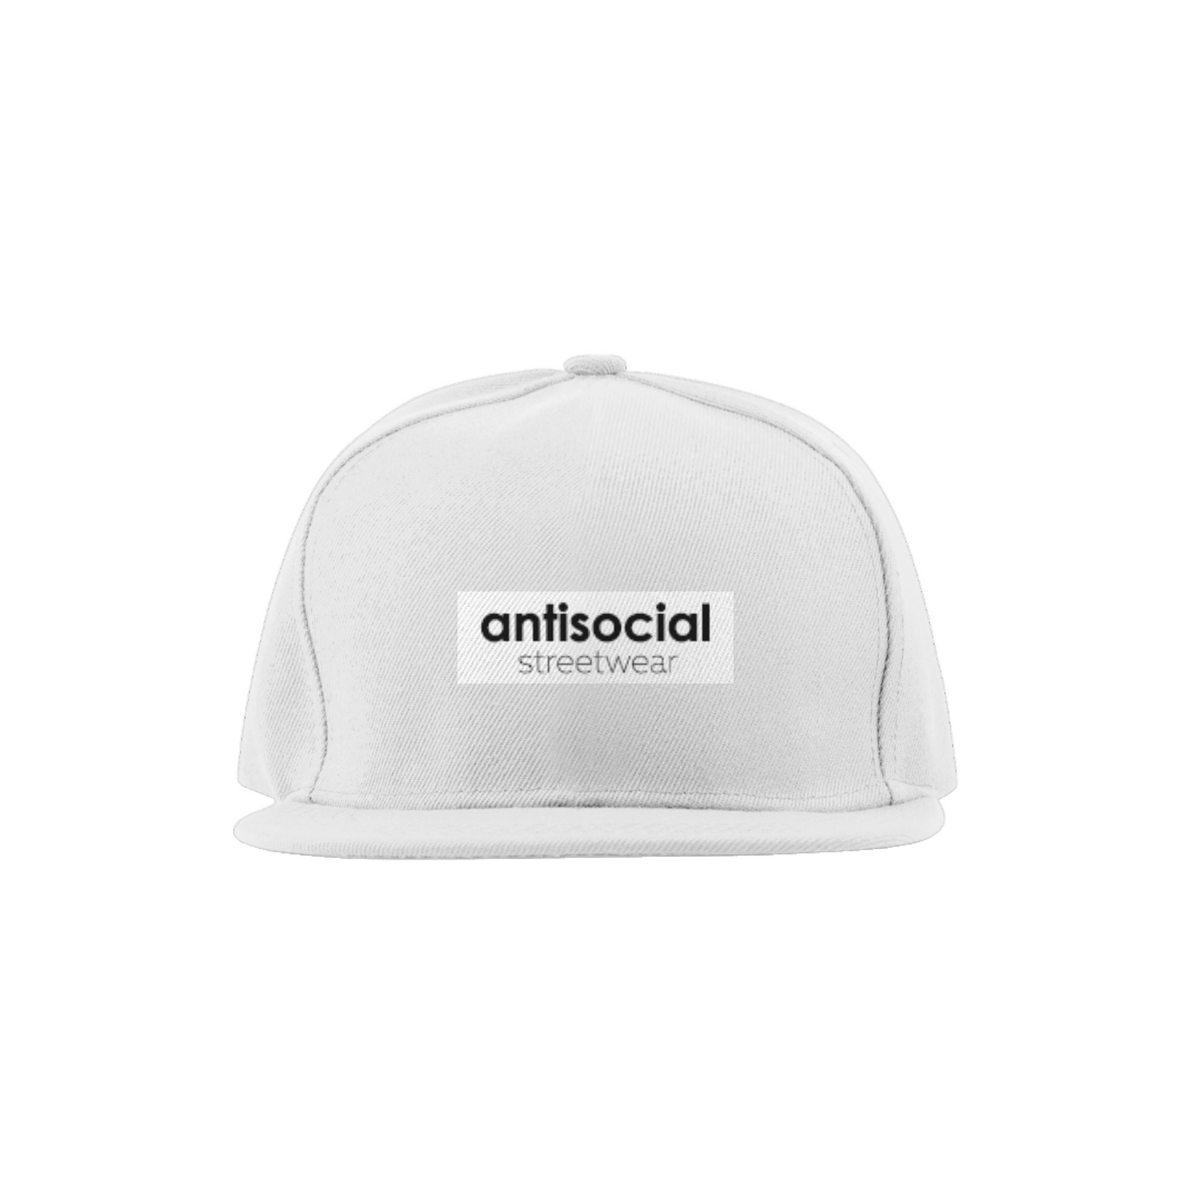 Nome do produto: Caps antisocial